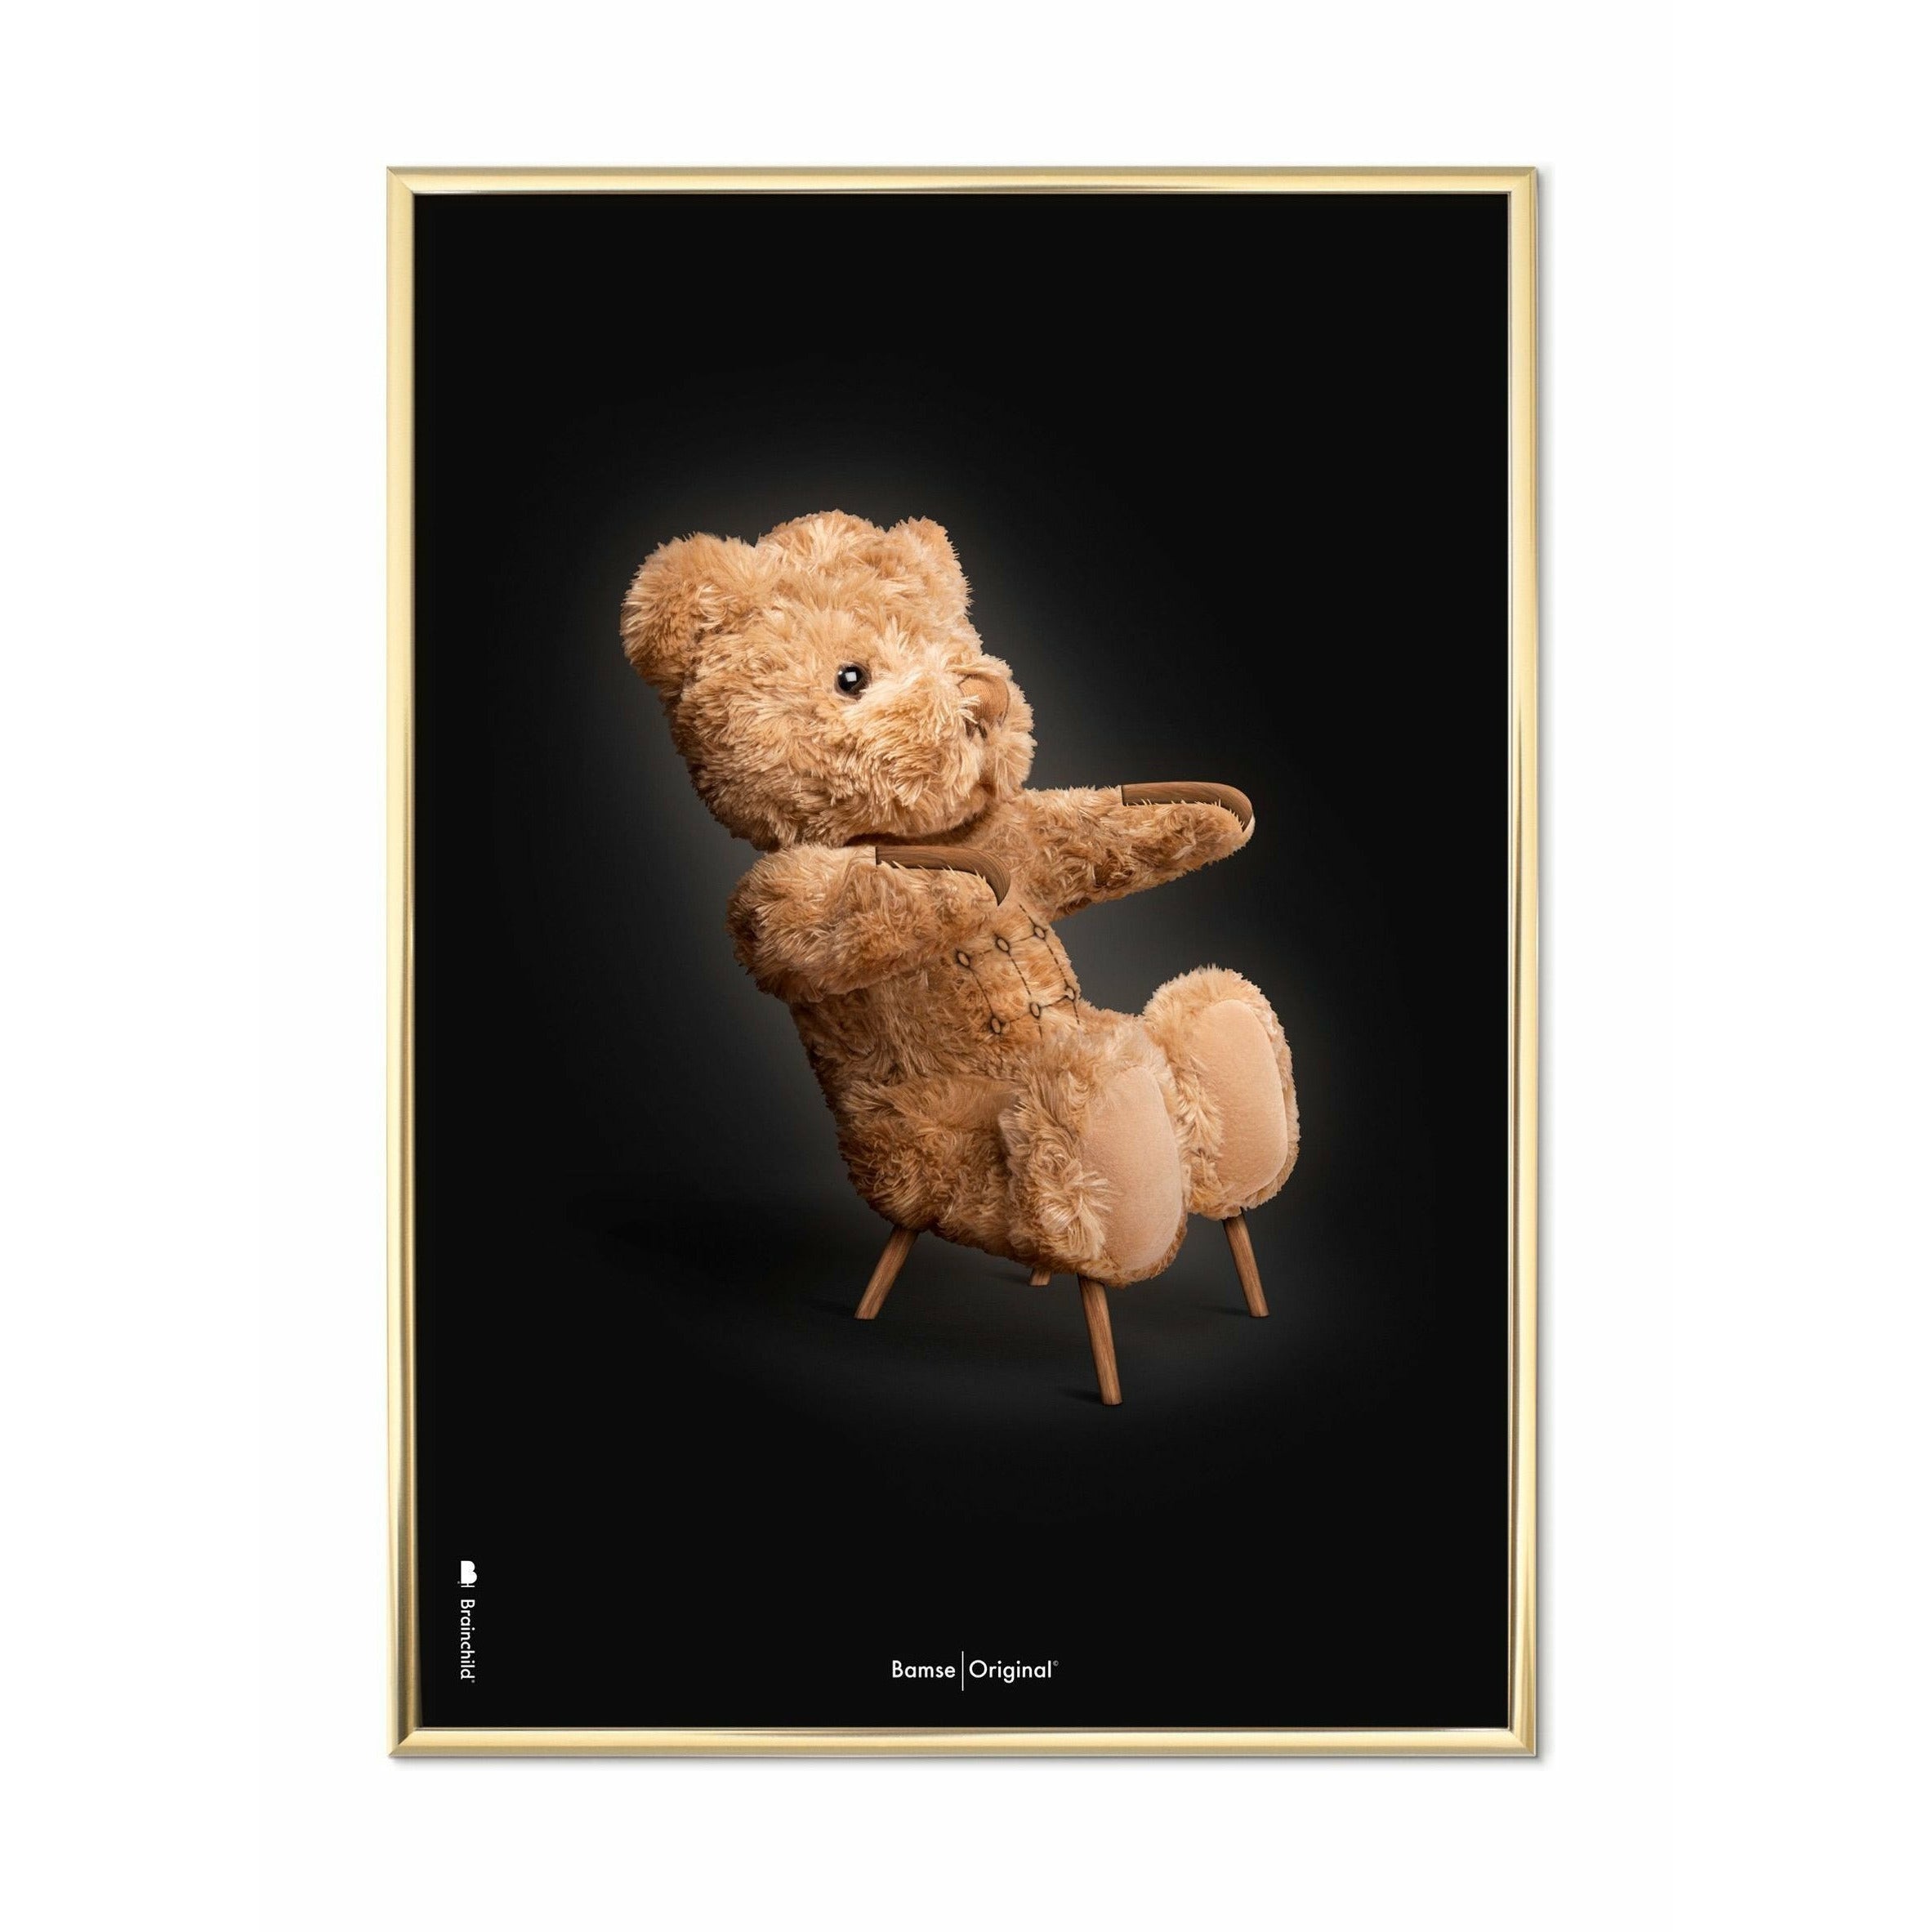 Brainchild Teddybär Classic Poster, messingfarbener Rahmen A5, schwarzer Hintergrund